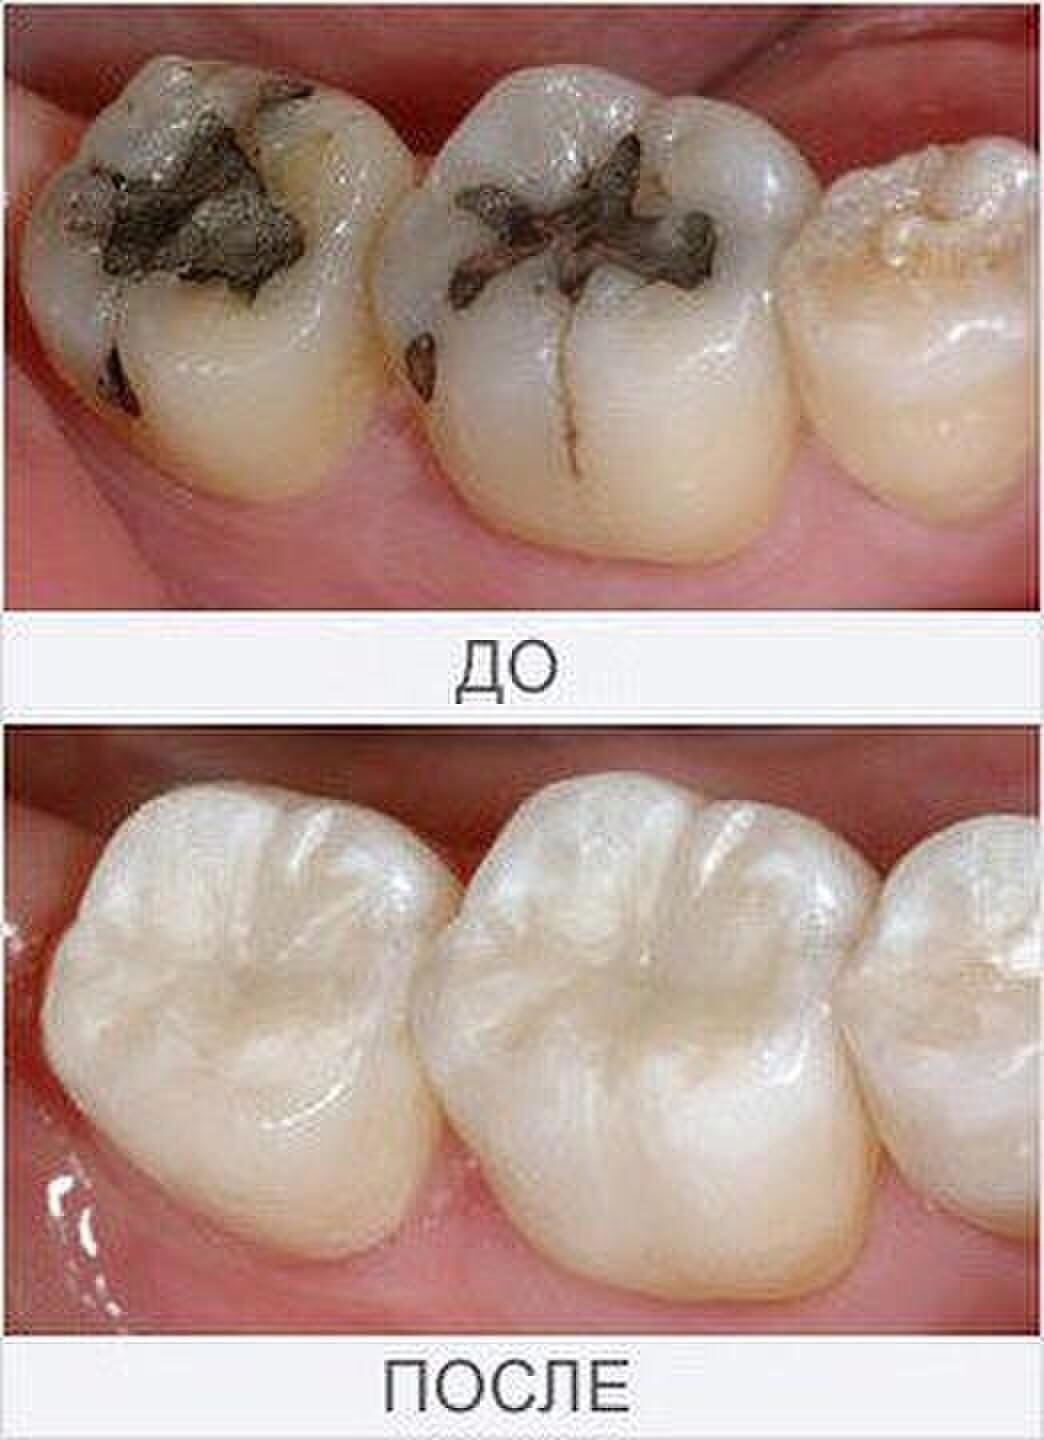 Своевременное лечение зубов поможет вам избежать последствий кариеса